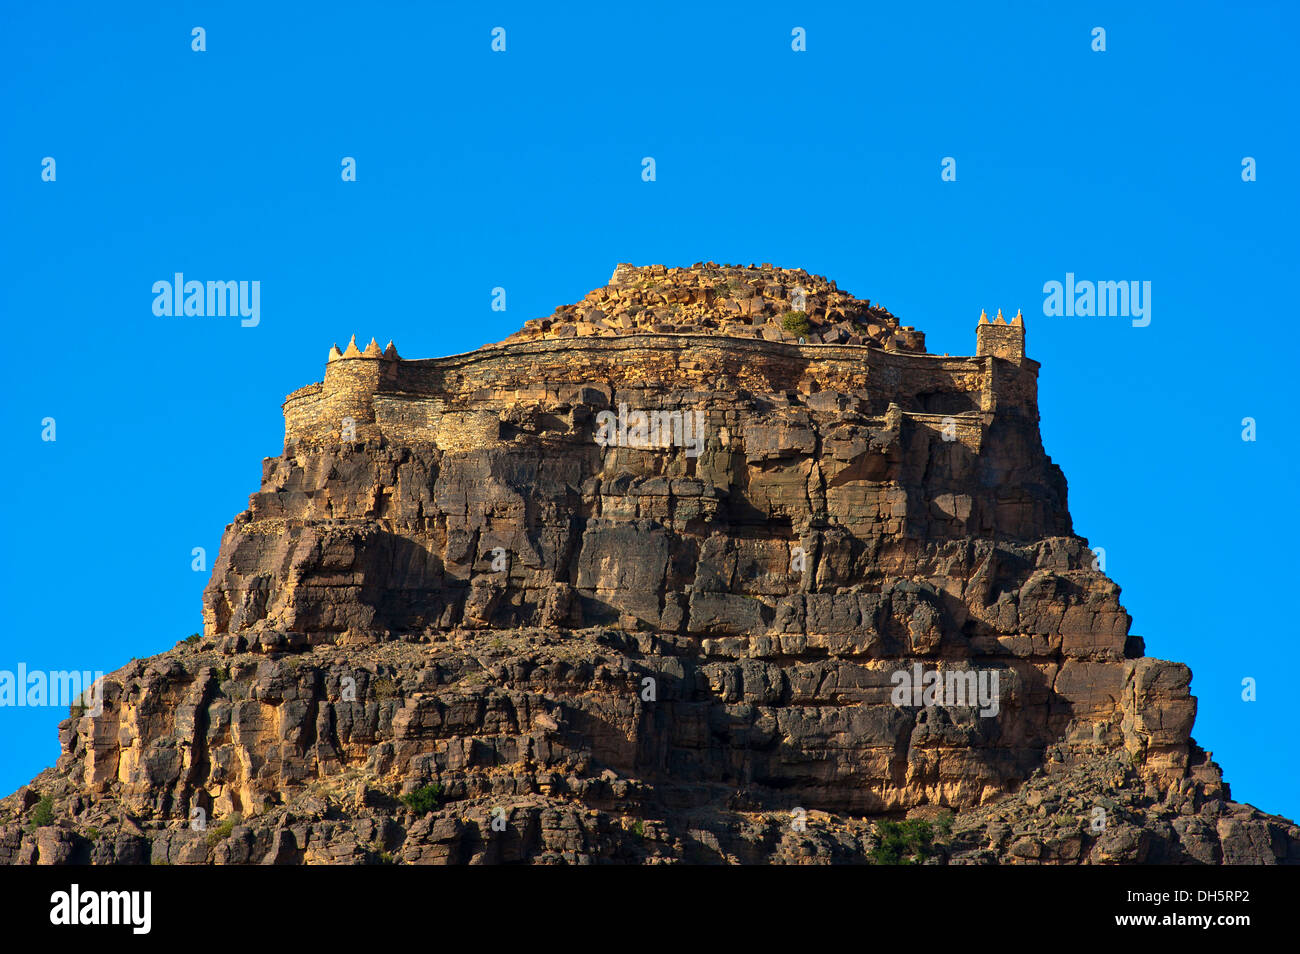 El impresionante Agadir Id Aissa, castillo fortificado sobre un risco, Amtoudi, Anti-Atlas o menor cordillera del Atlas, sur de Marruecos. Foto de stock